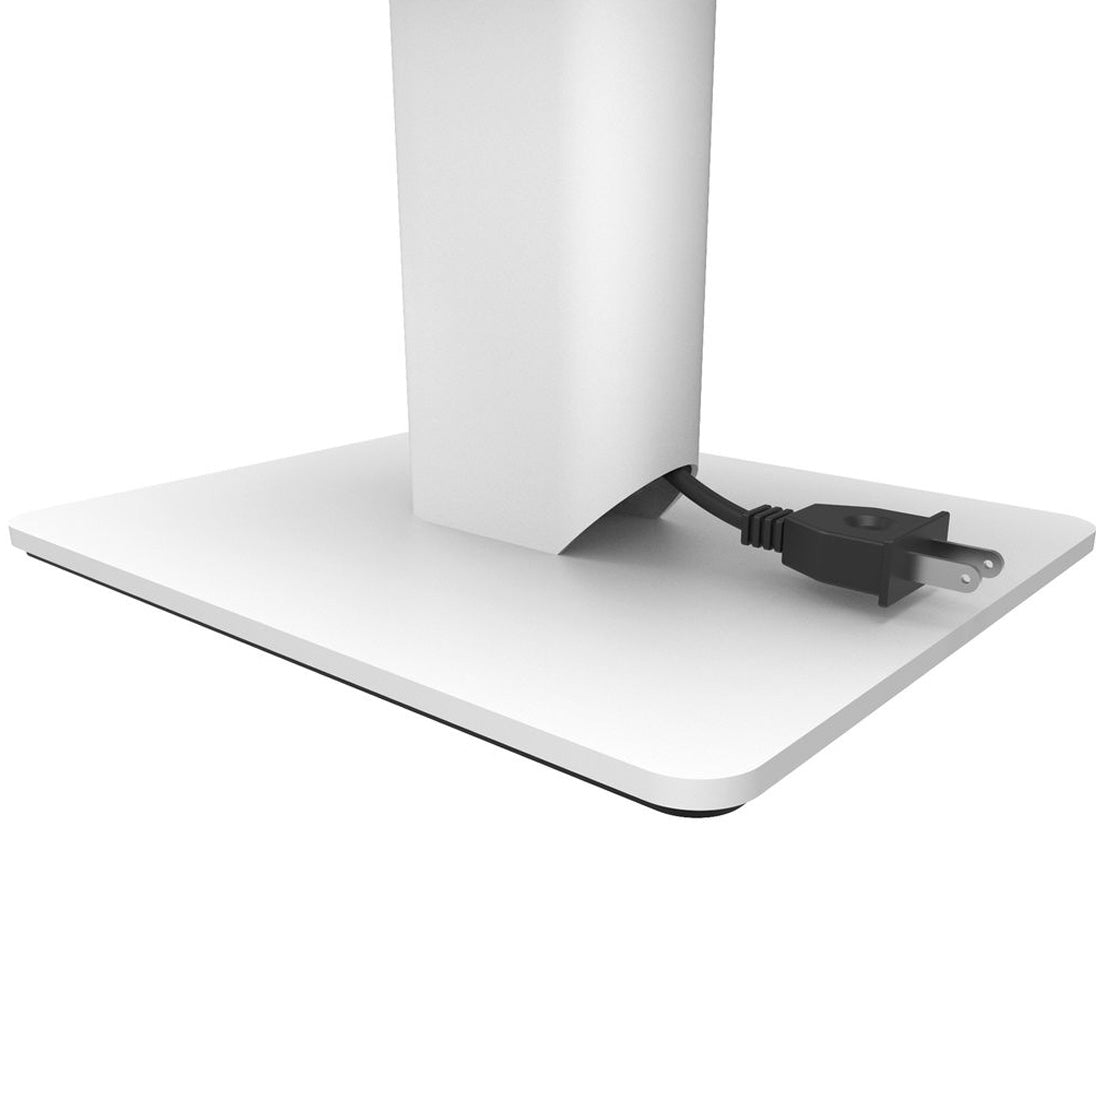 Kanto SP6HDW 6" SP Desktop Speaker Stands - White